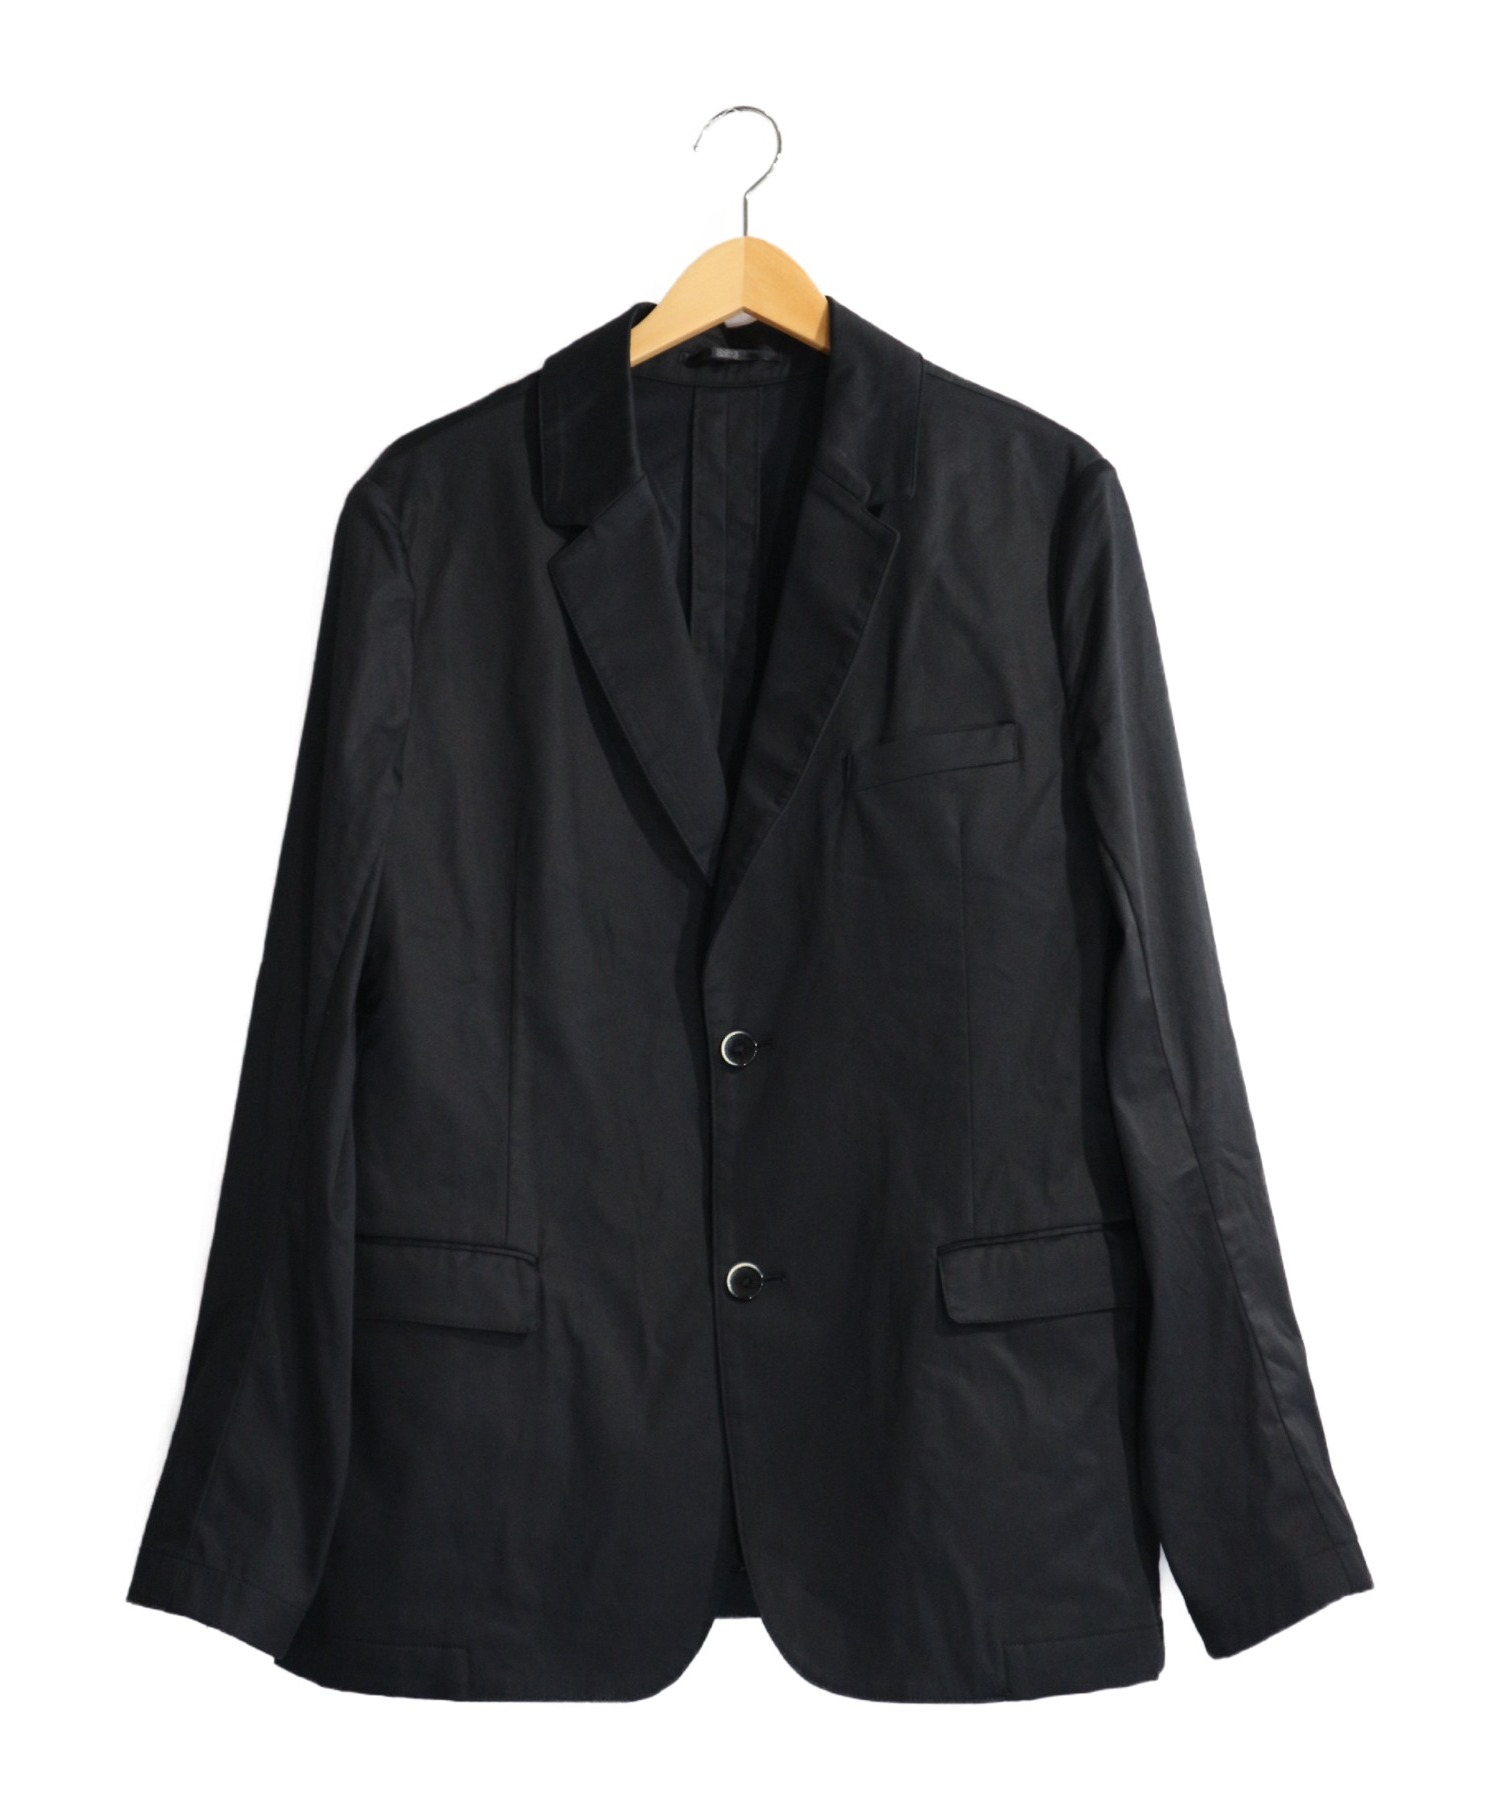 中古 古着通販 Solid ソリッド テーラードジャケット ブラック サイズ 3 ブランド 古着通販 トレファク公式 Trefac Fashion